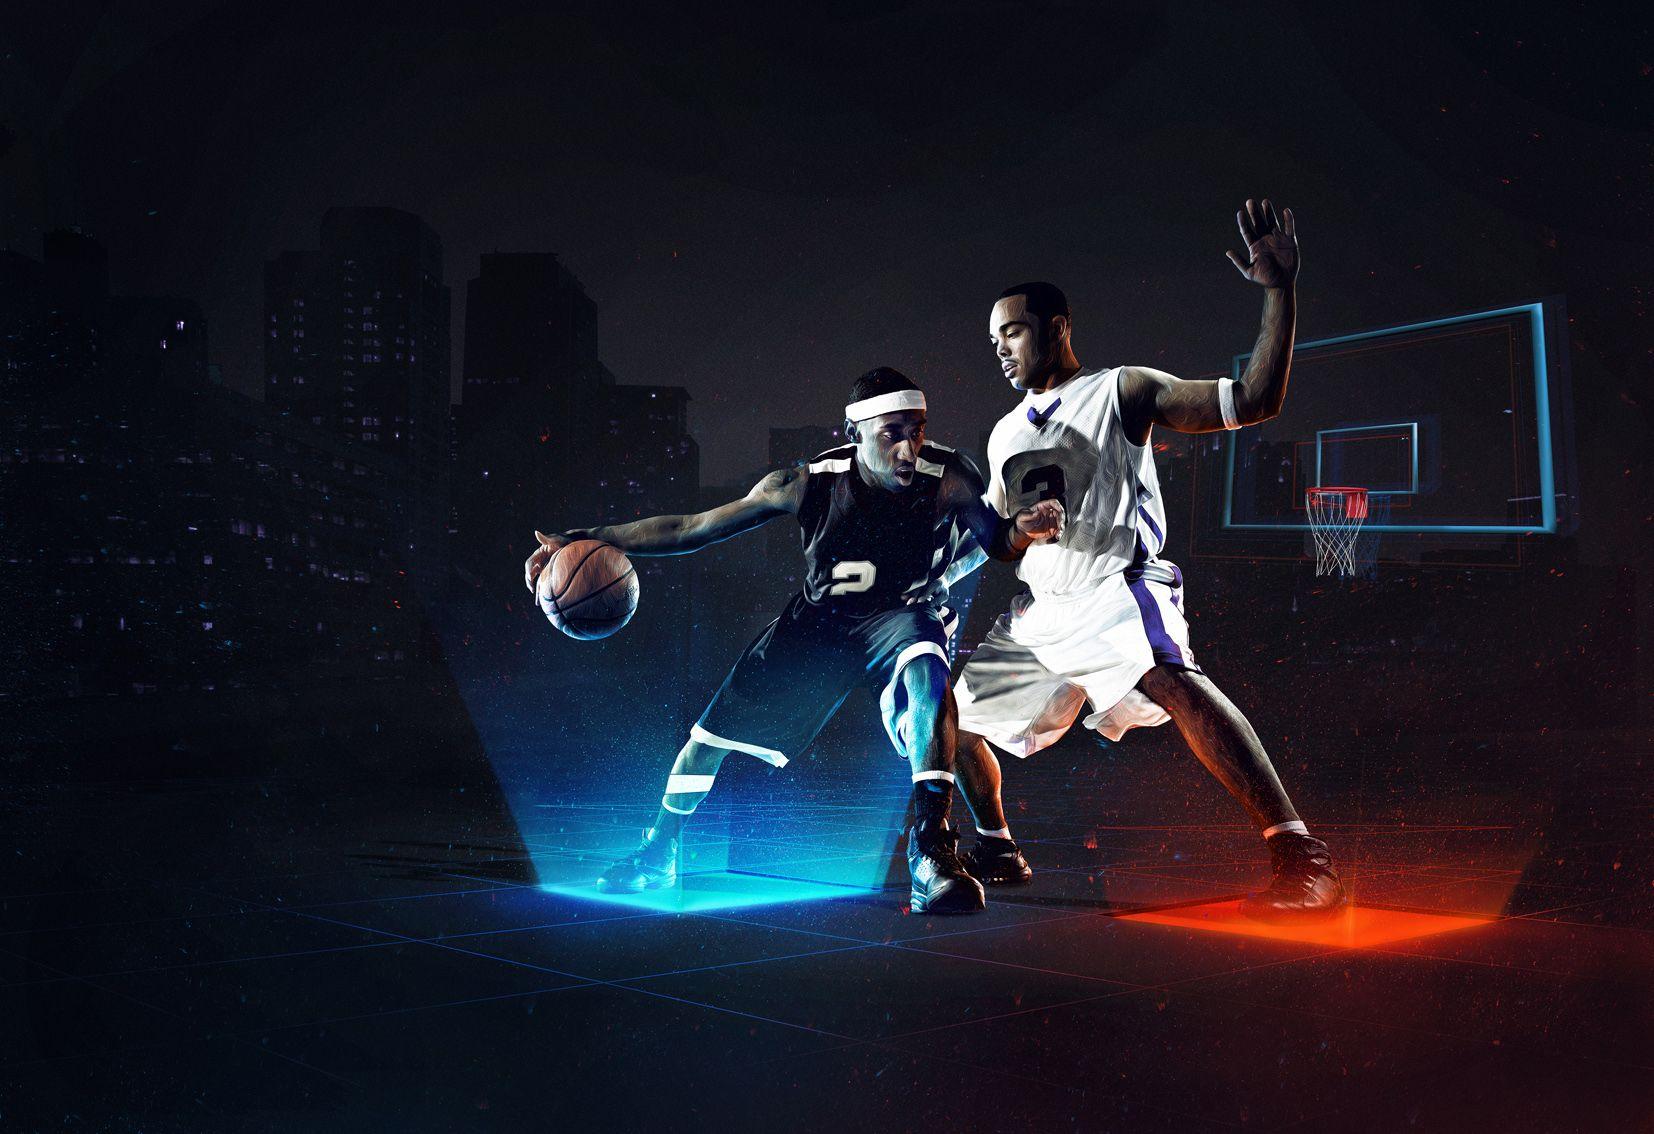 Neon Basketball Logo - Basketball Neon Game - Pierre Doucin - Debut Art